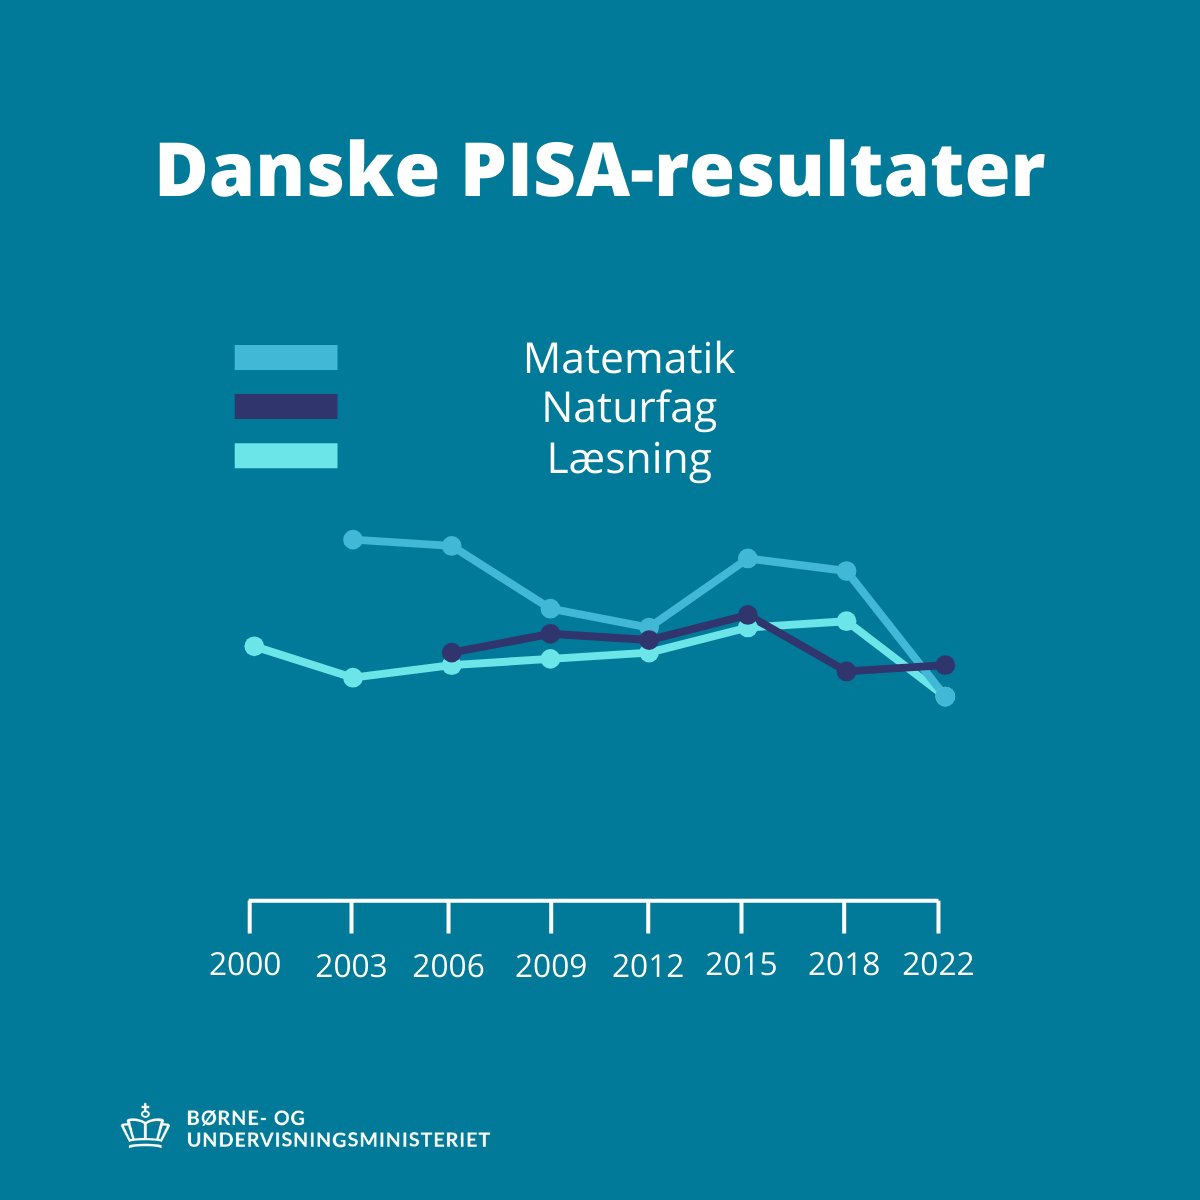 De danske elever er gået tilbage i både læsning og matematik. Det viser nye PISA-resultater. Læs mere her: uvm.dk/aktuelt/nyhede… #uddpol #skolechat #Pisa